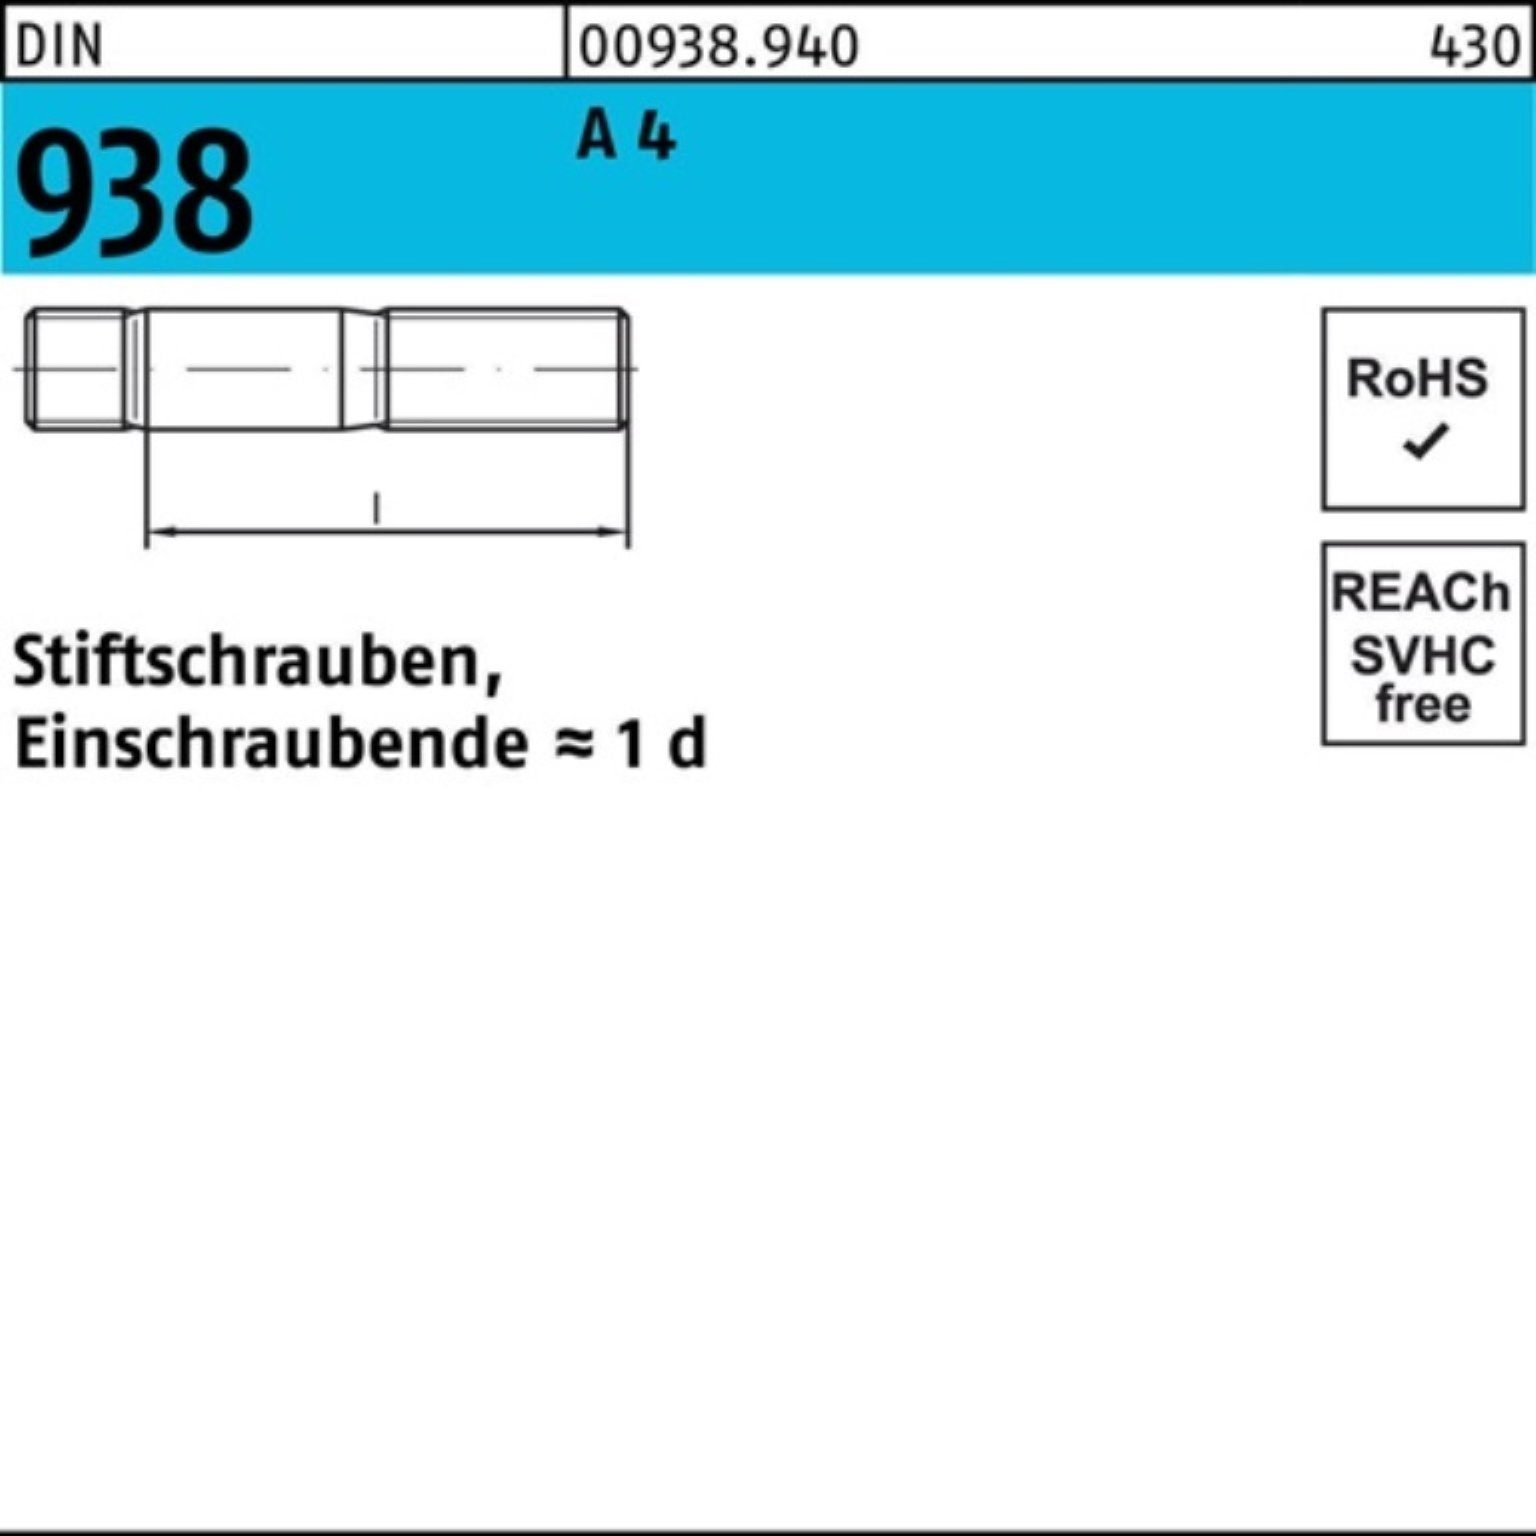 Stif M8x 25 A 4 Reyher DIN Stück 938 DIN Stiftschraube Pack Stiftschraube 938 4 100er 50 A